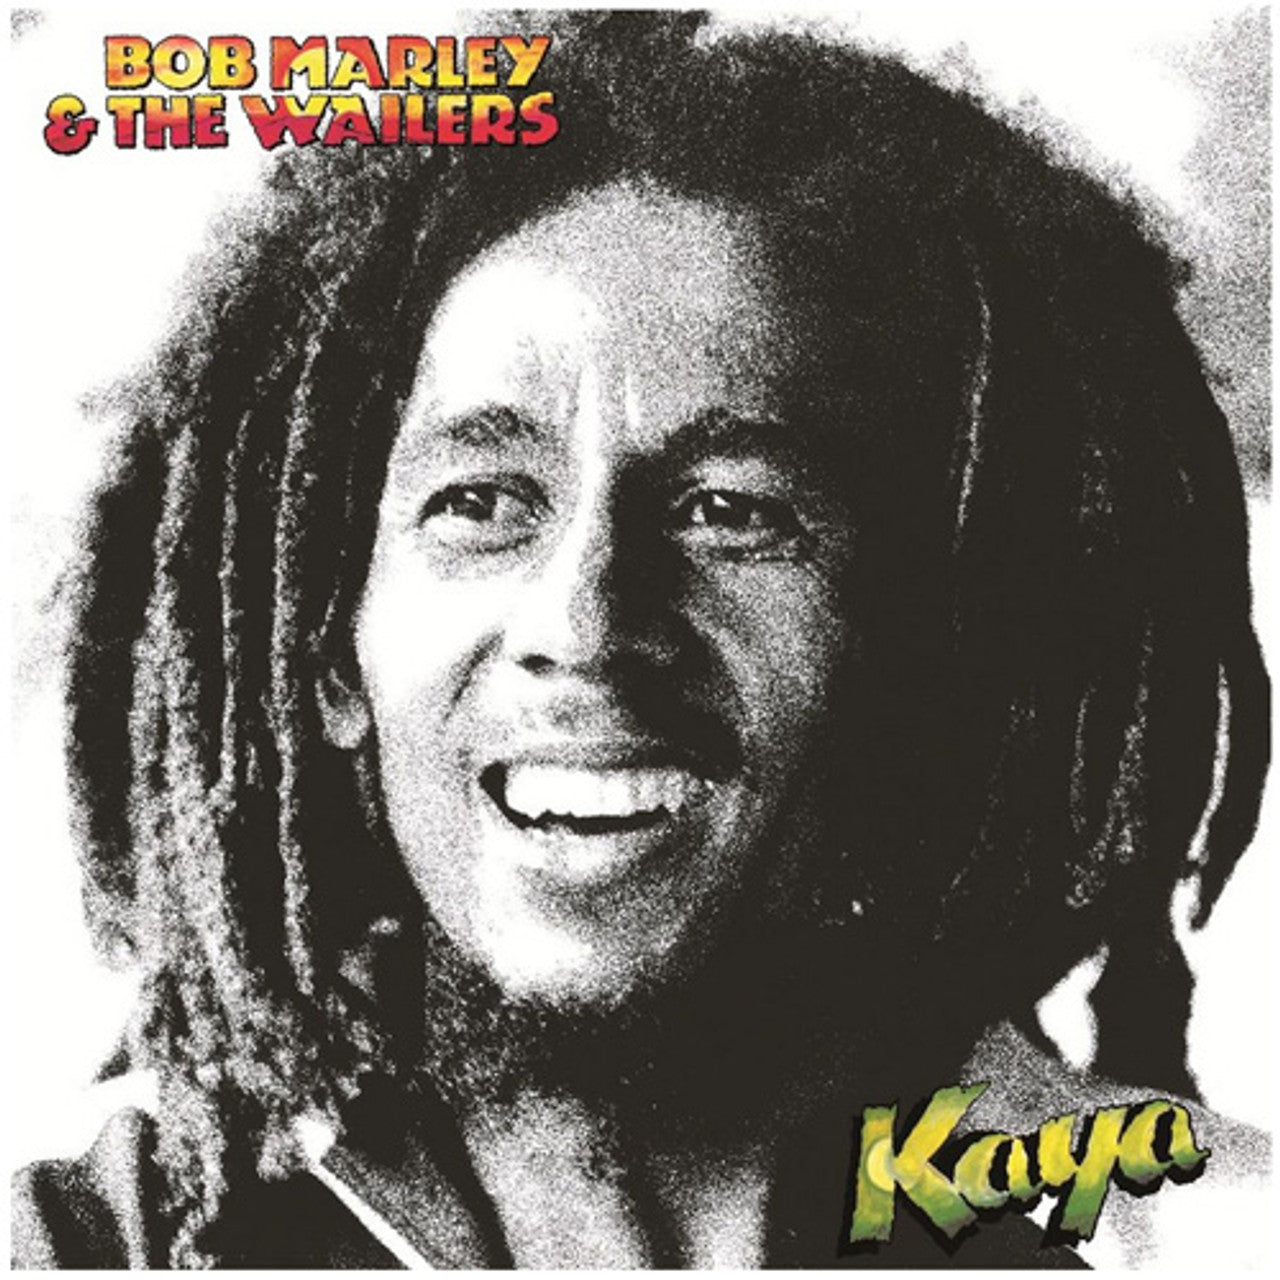 Bob Marley &amp; The Wailers - Kaya - Tuff Gong LP